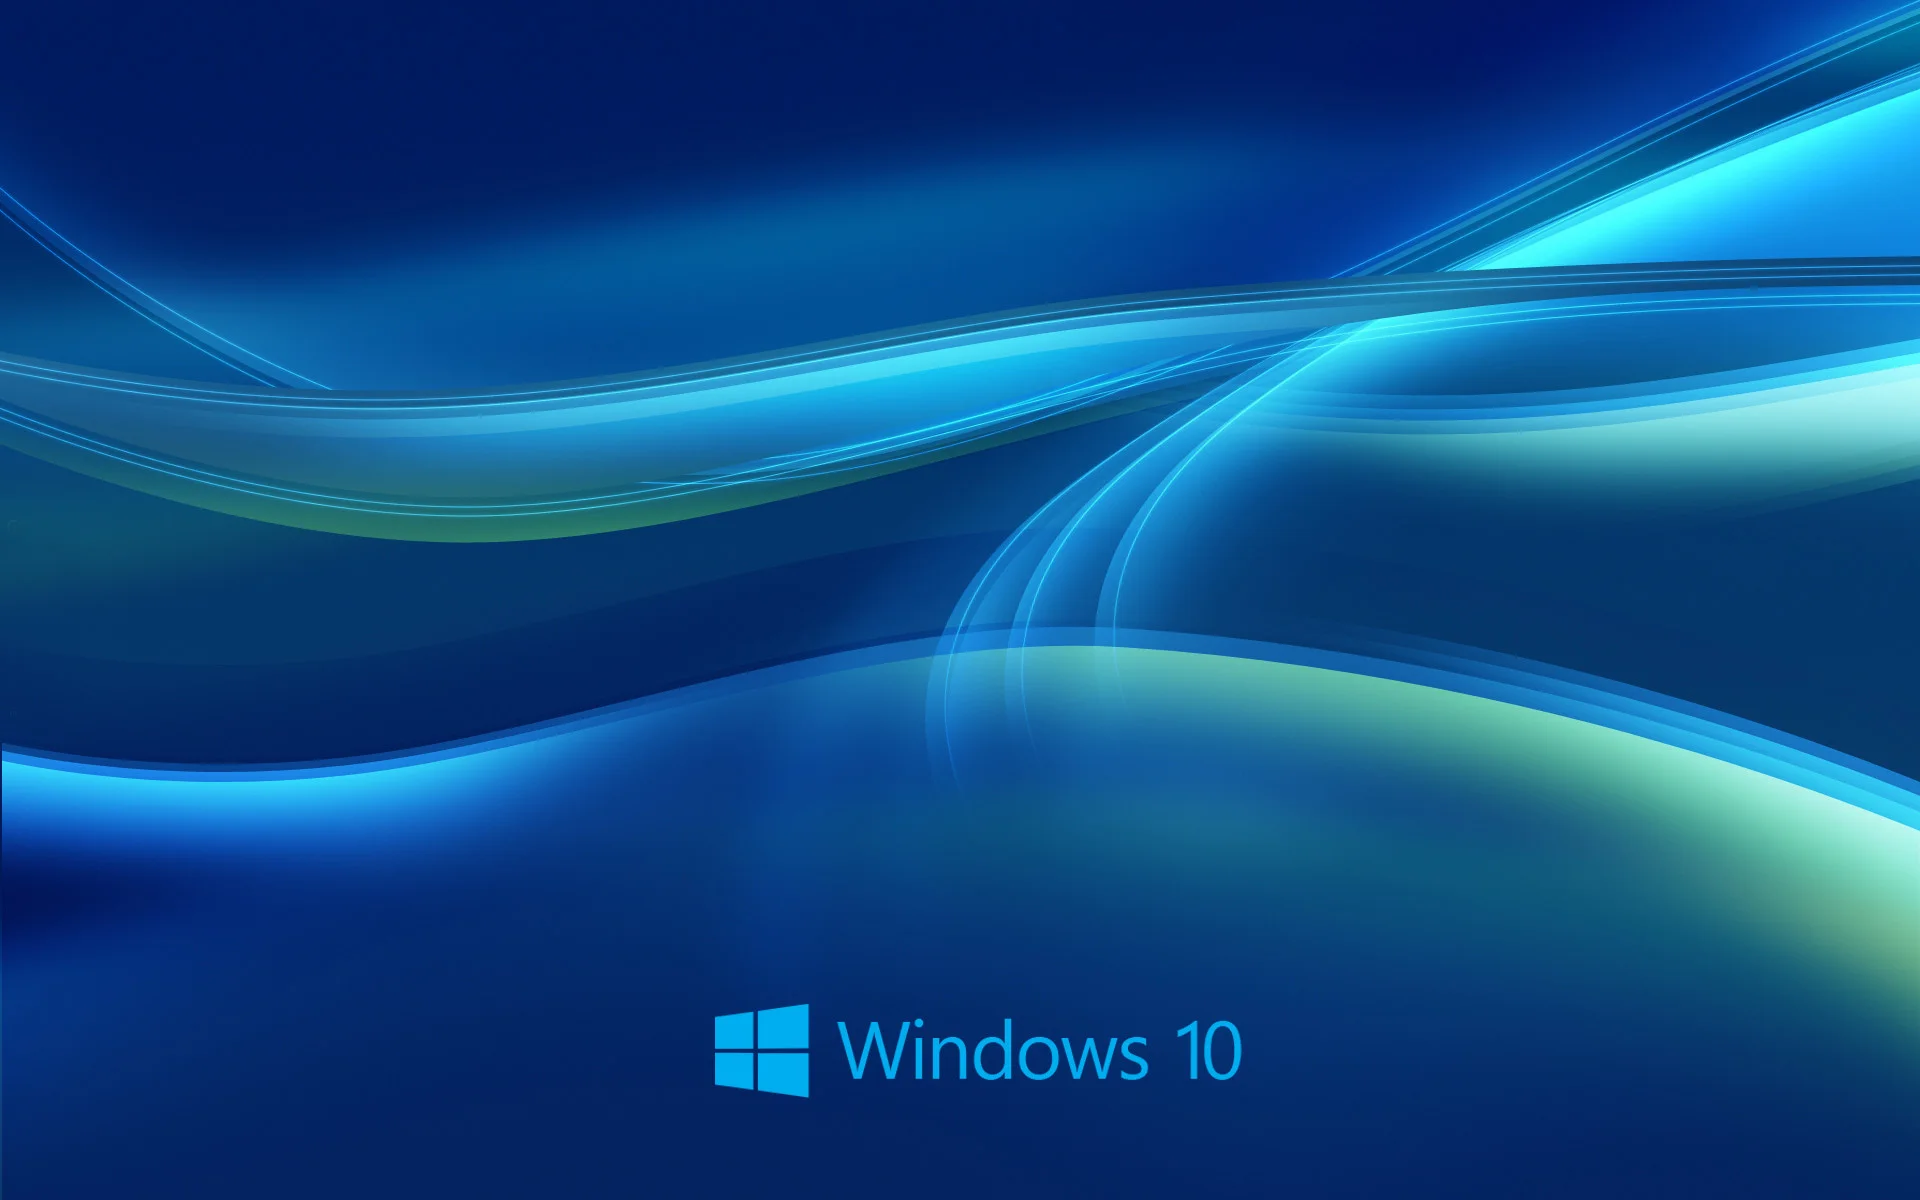 Hình nền Windows 10 - Đặt hình nền đẹp là điều quan trọng để tạo ra khoảng không thượng xuyên thư giãn và thực sự hưởng thức dữ liệu trên màn hình. Windows 10 Wallpaper sẵn sàng cung cấp một loạt các hình nền đẹp cho bạn, từ cảnh quan đến các kiểu dáng độc đáo.